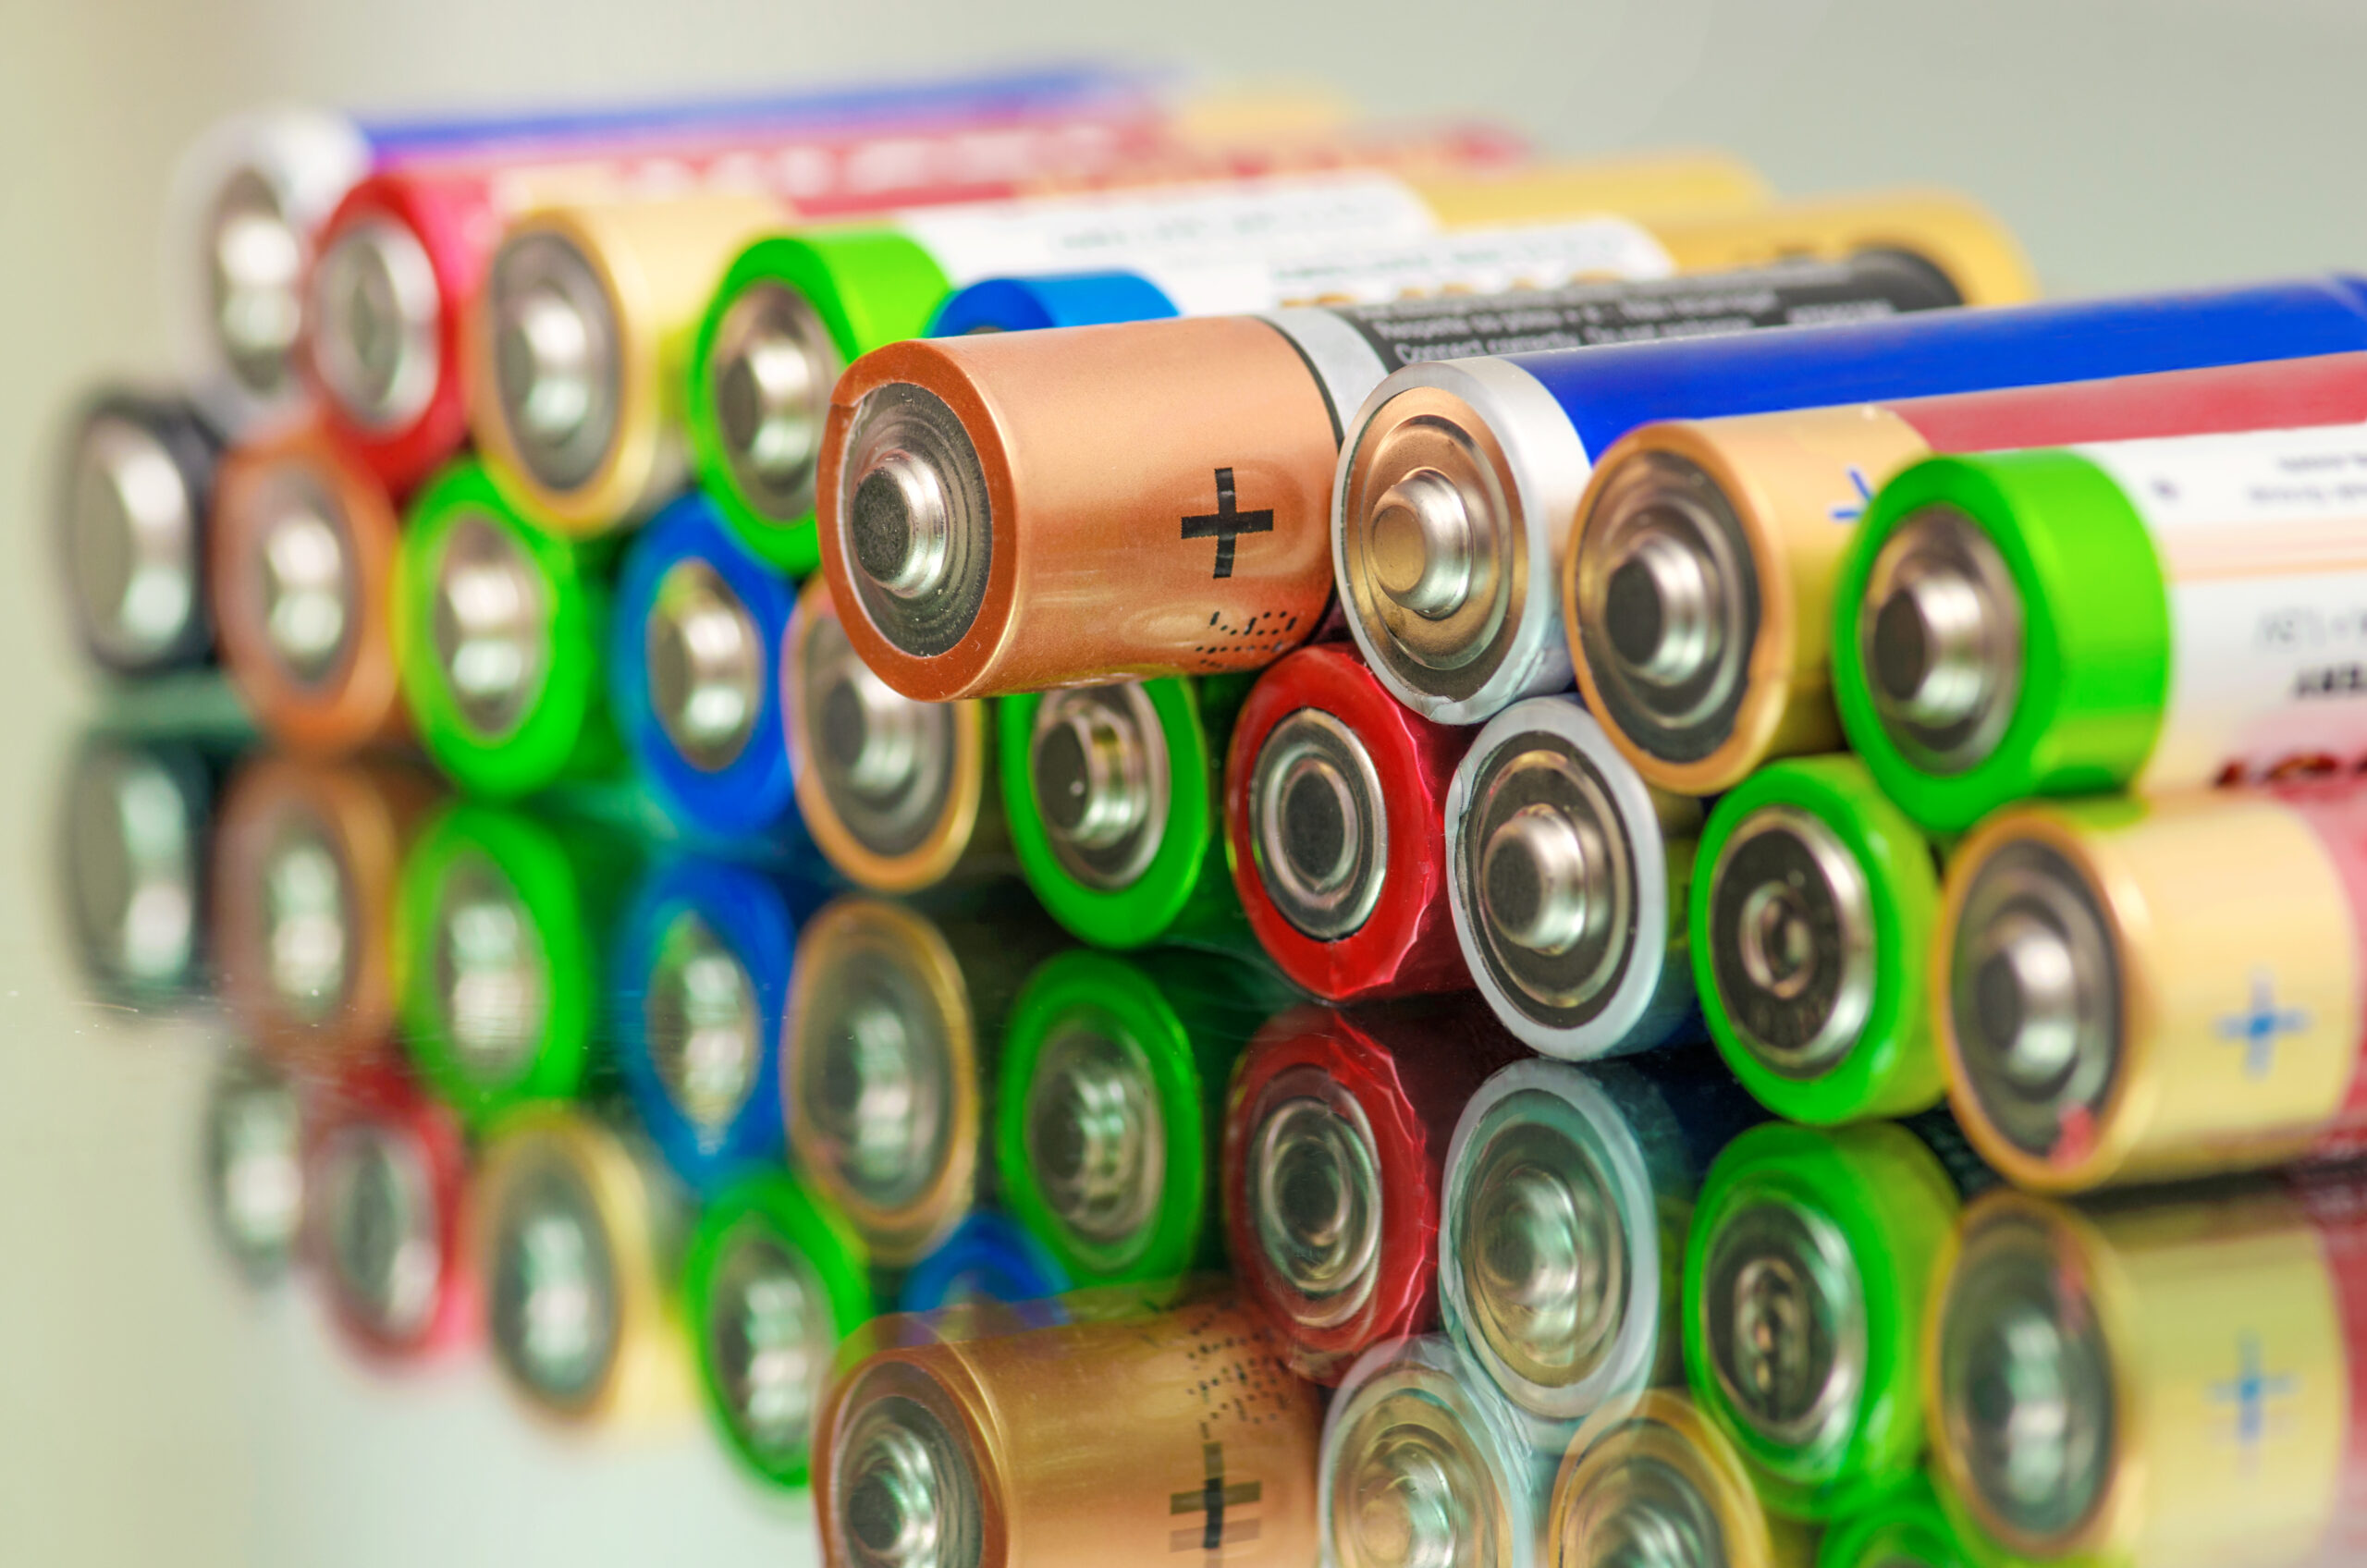 Hvordan vælger man primært batteri?